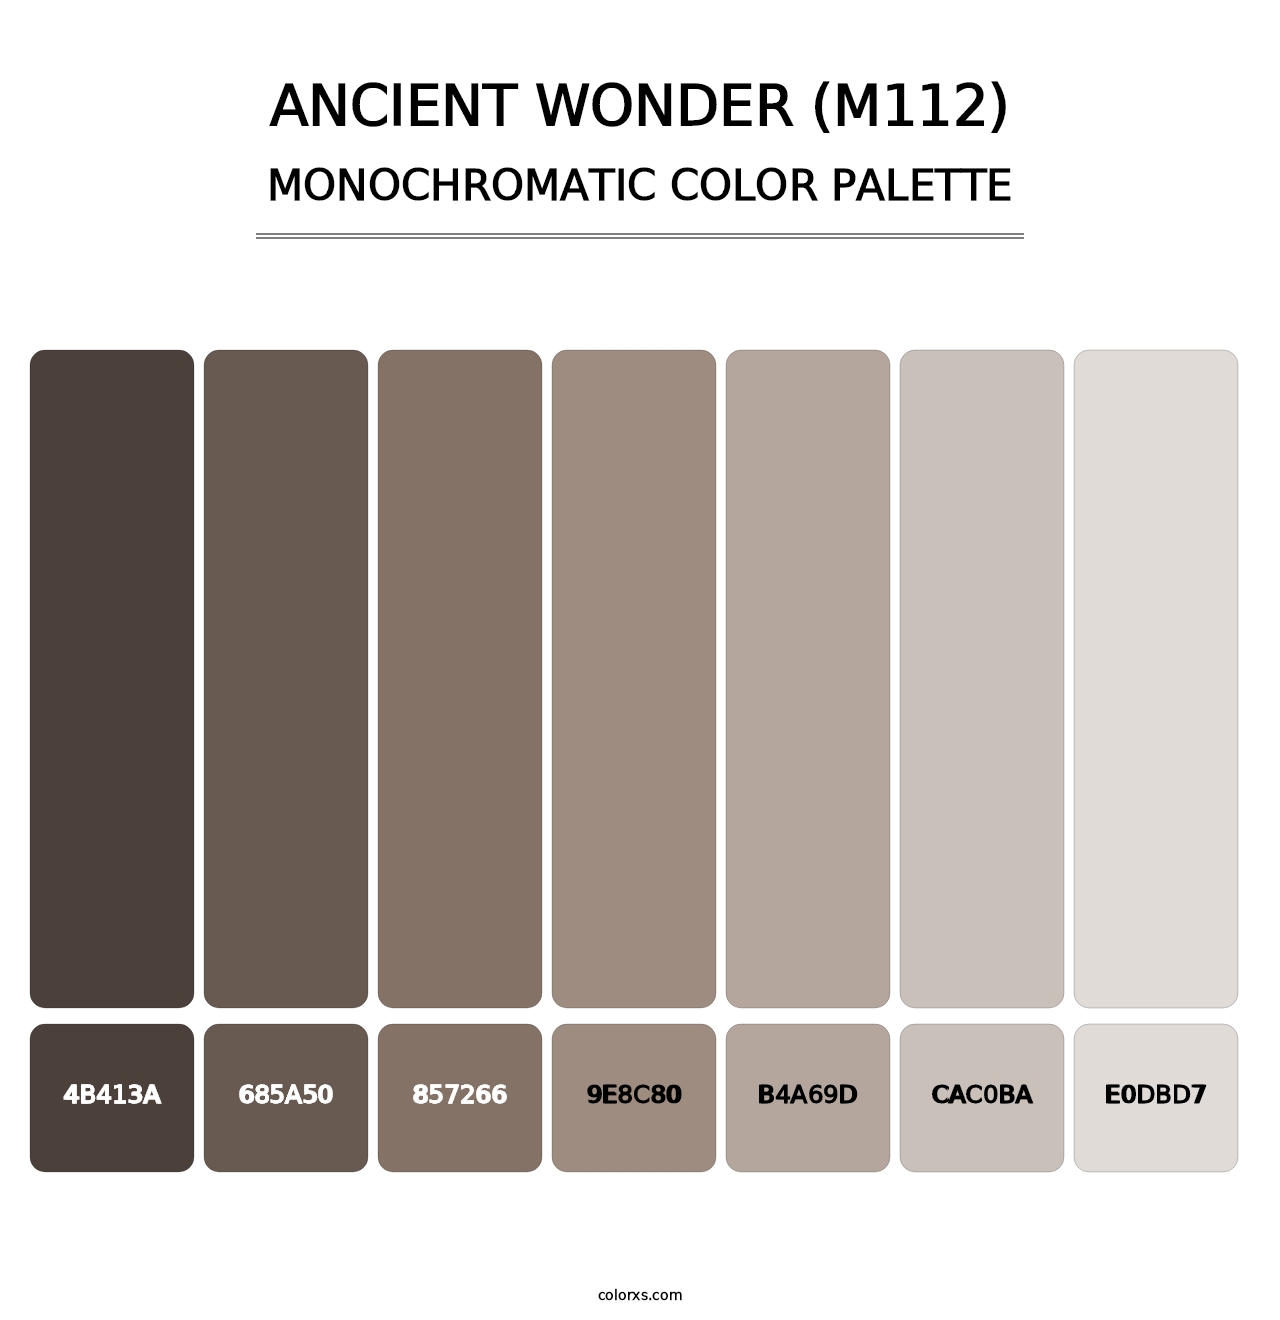 Ancient Wonder (M112) - Monochromatic Color Palette